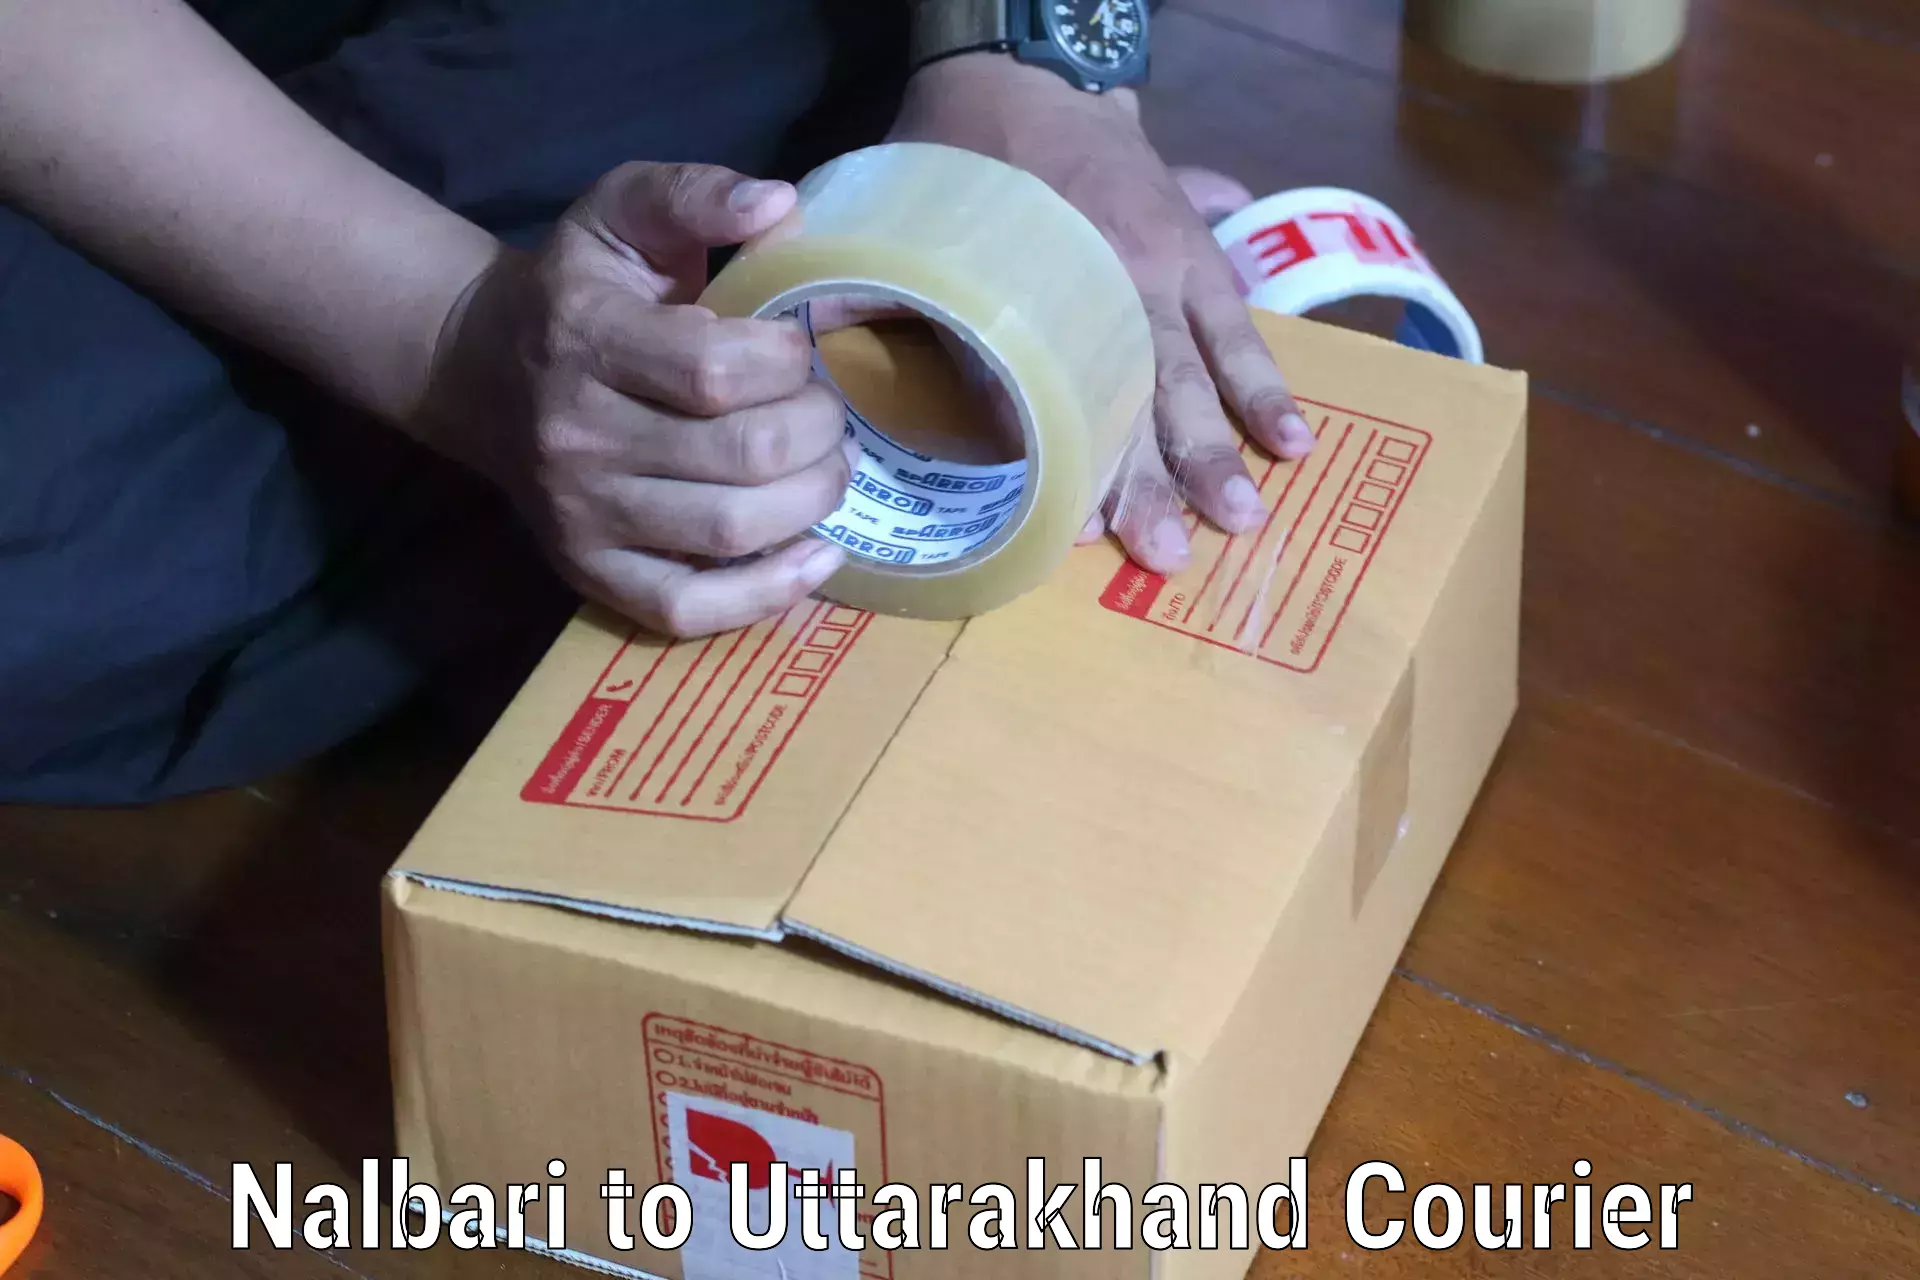 Professional courier handling Nalbari to Sitarganj